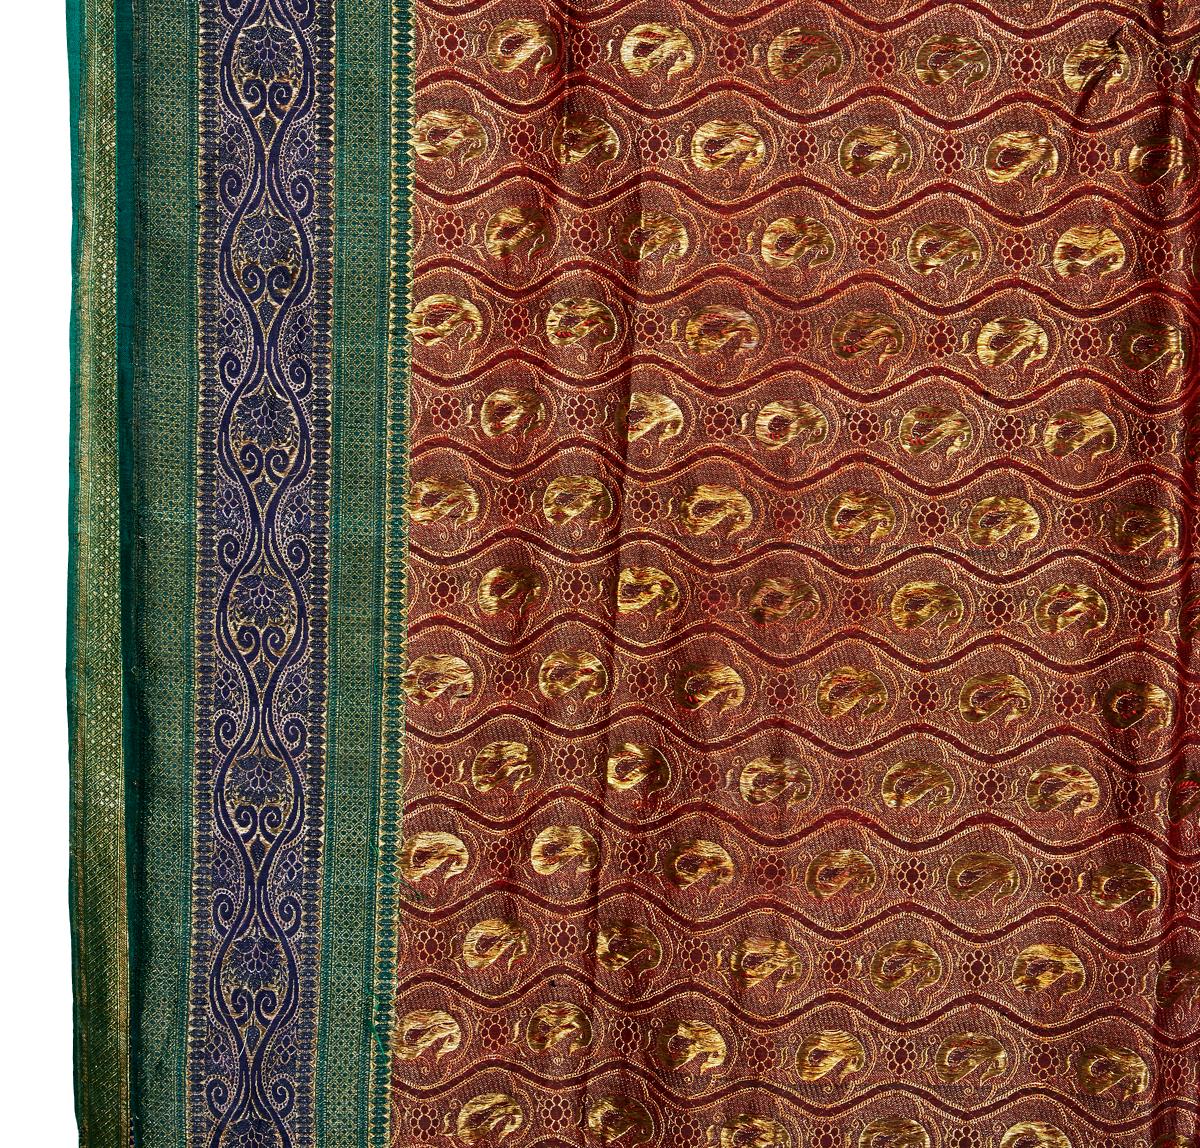 Ein aufwändiger Sari aus Indien, handgefertigt aus einem einzigen Stück Seidenbrokat. Mitte des 20. Jahrhunderts, ca. 1970. Goldfarbener Paisley-Brokat auf bordeauxroter Seide, mit blauen, grünen und goldenen Seitenstreifen. Vollständig wendbar mit